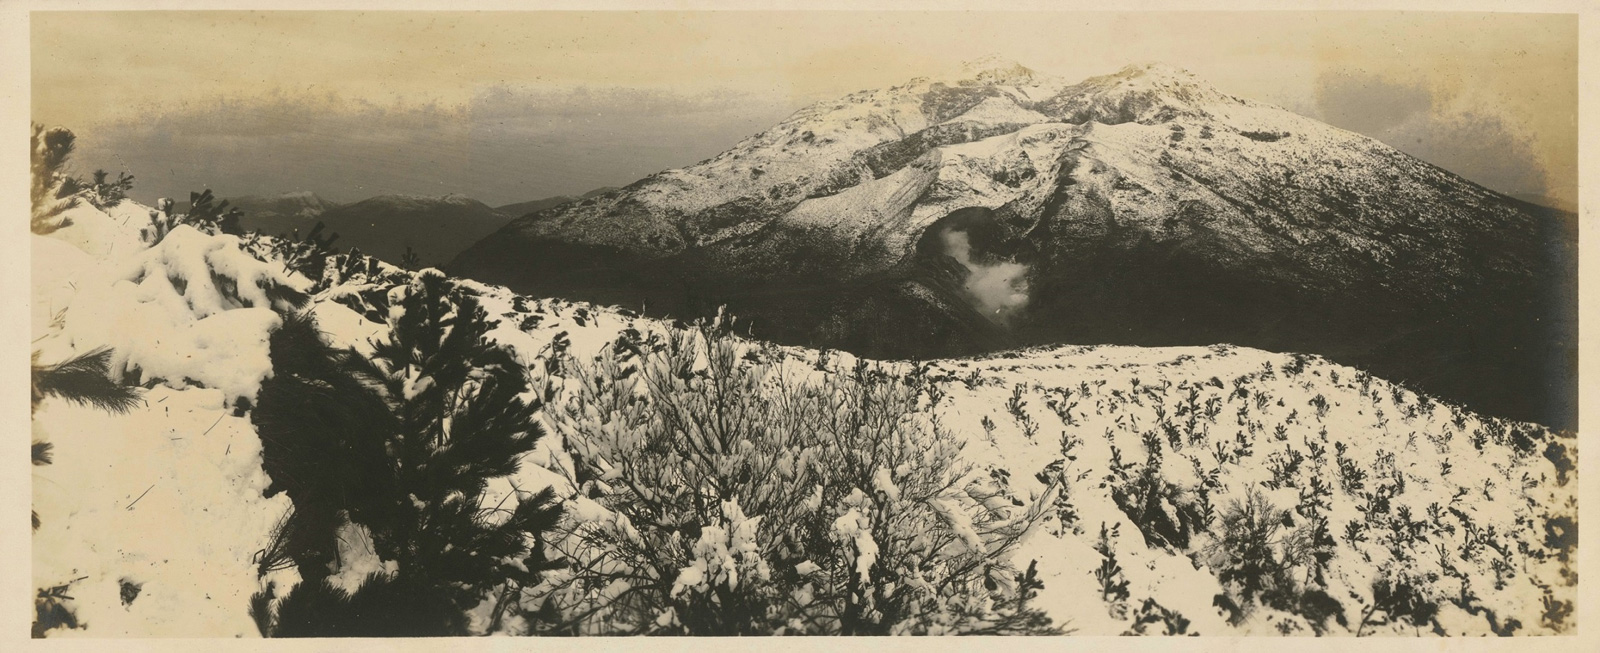 〈七星山的雪景〉1932年末，大屯火山群降下了罕見的大雪。此畫面是由小觀音山拍攝七星山，畫面中央呈現雙峰的大山即七星山塊。（圖片來源／國家攝影文化中心）